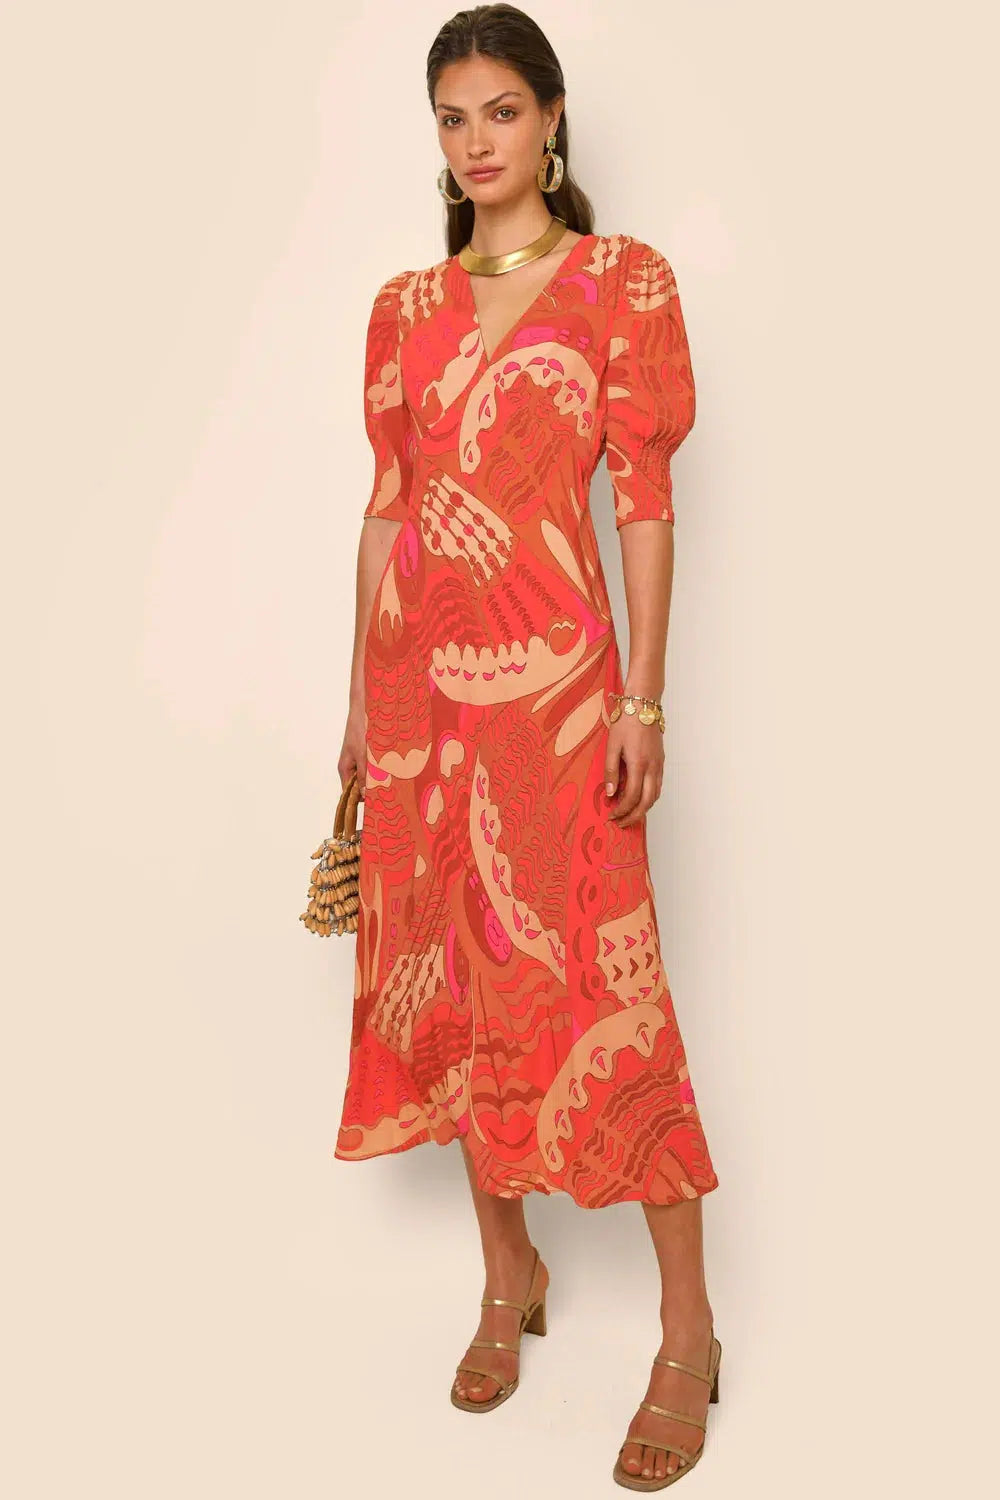 Zadie Dress Butterfly Red-Dress-Rixo-Debs Boutique